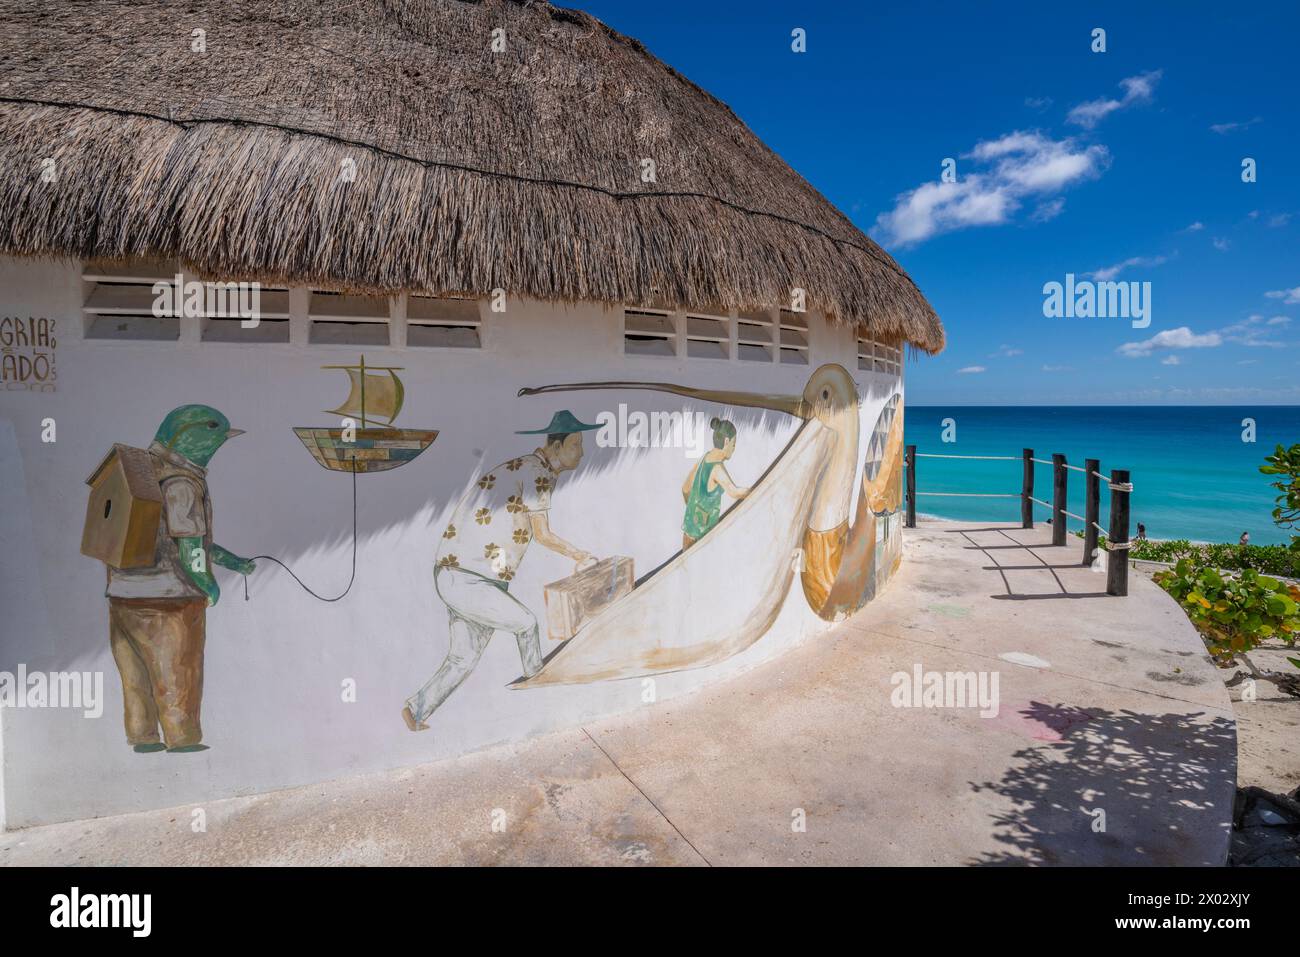 Vue de l'art mural (peintures murales) à Playa Delfines, Hotel zone, Cancun, côte caribéenne, péninsule du Yucatan, Mexique, Amérique du Nord Banque D'Images